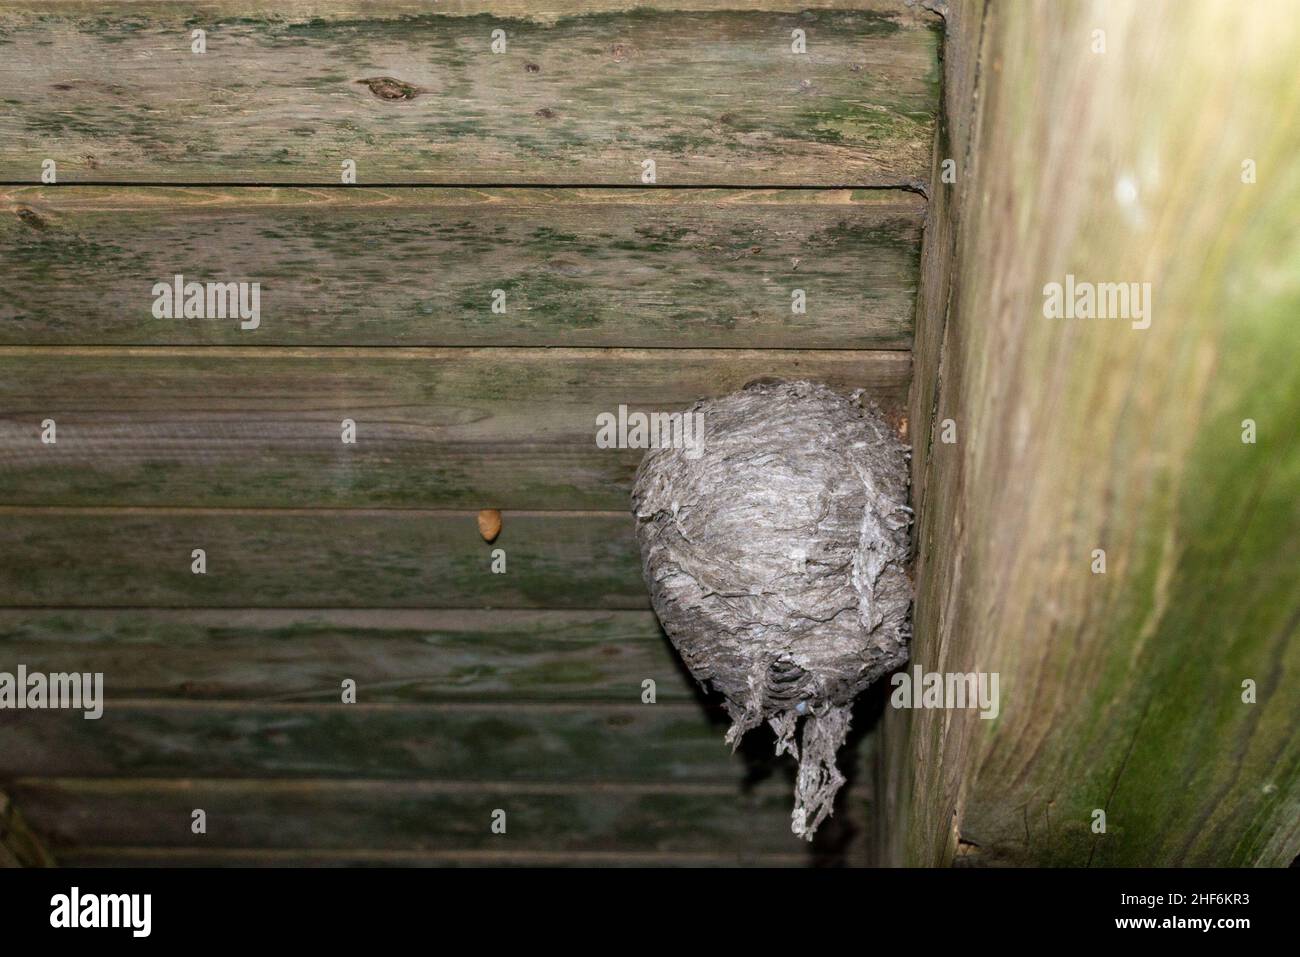 Un grande nido di corno di vespa è attaccato ad un ponte del patio di legno. Il materiale di carta grigio è in strati che formano una forma rotonda con un piccolo foro circolare. Foto Stock